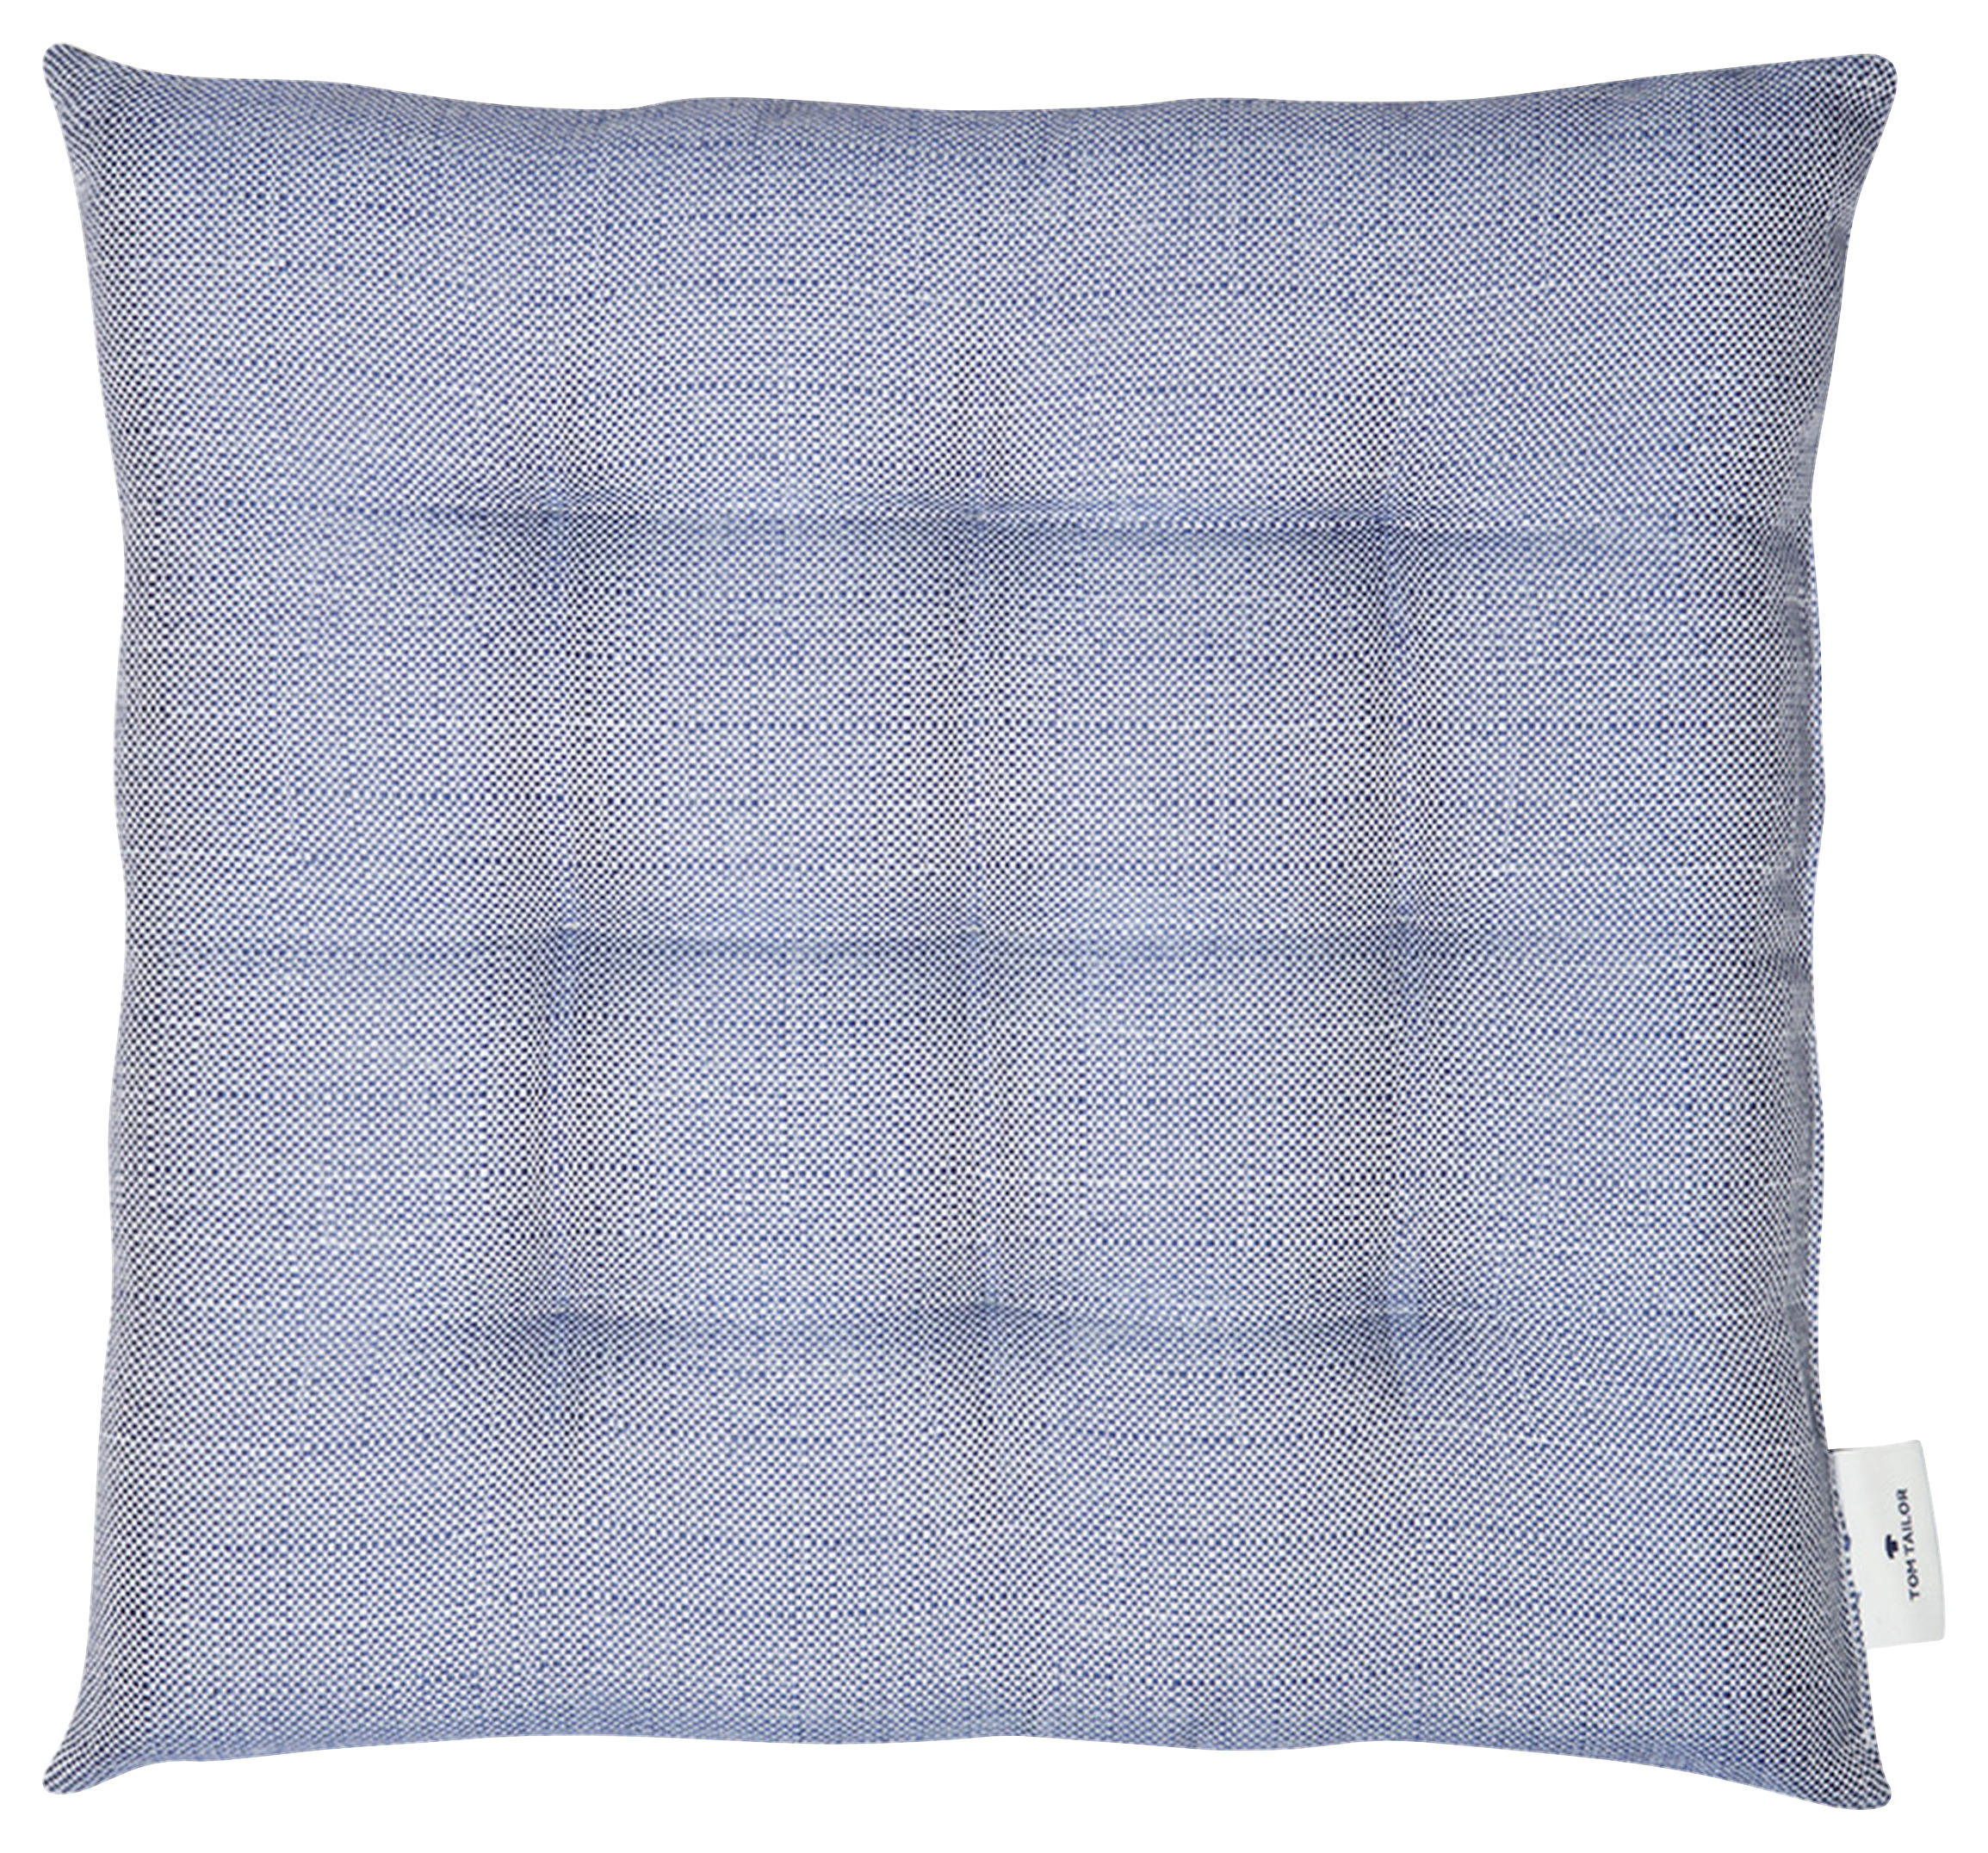 SITZKISSEN  40/40 cm   - Blau/Beige, KONVENTIONELL, Textil (40/40cm) - Tom Tailor